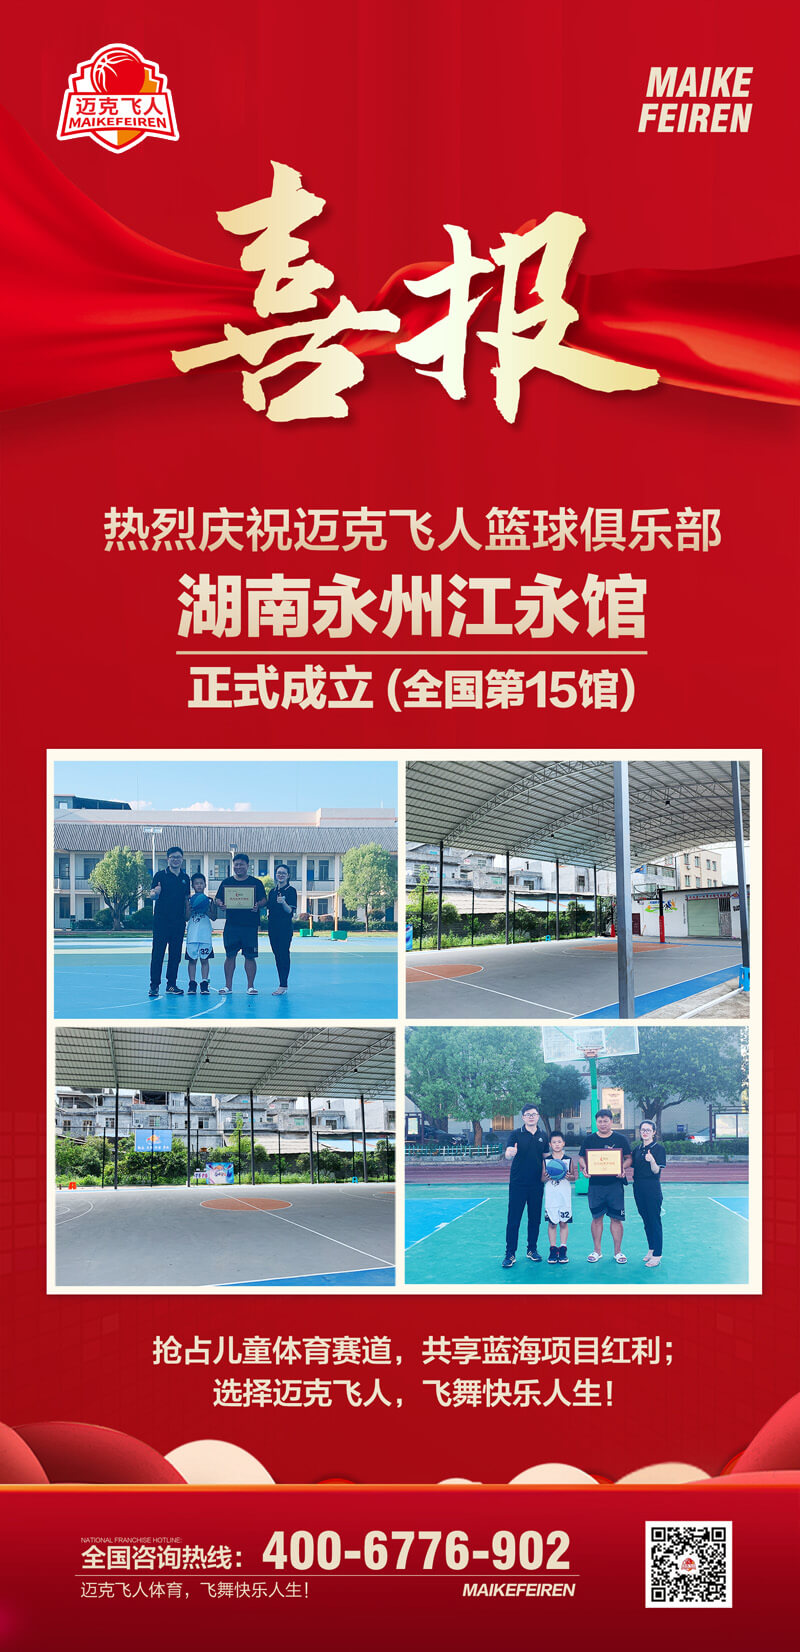 篮球加盟喜报：迈克飞人篮球俱乐部湖南永州江永馆正式成立